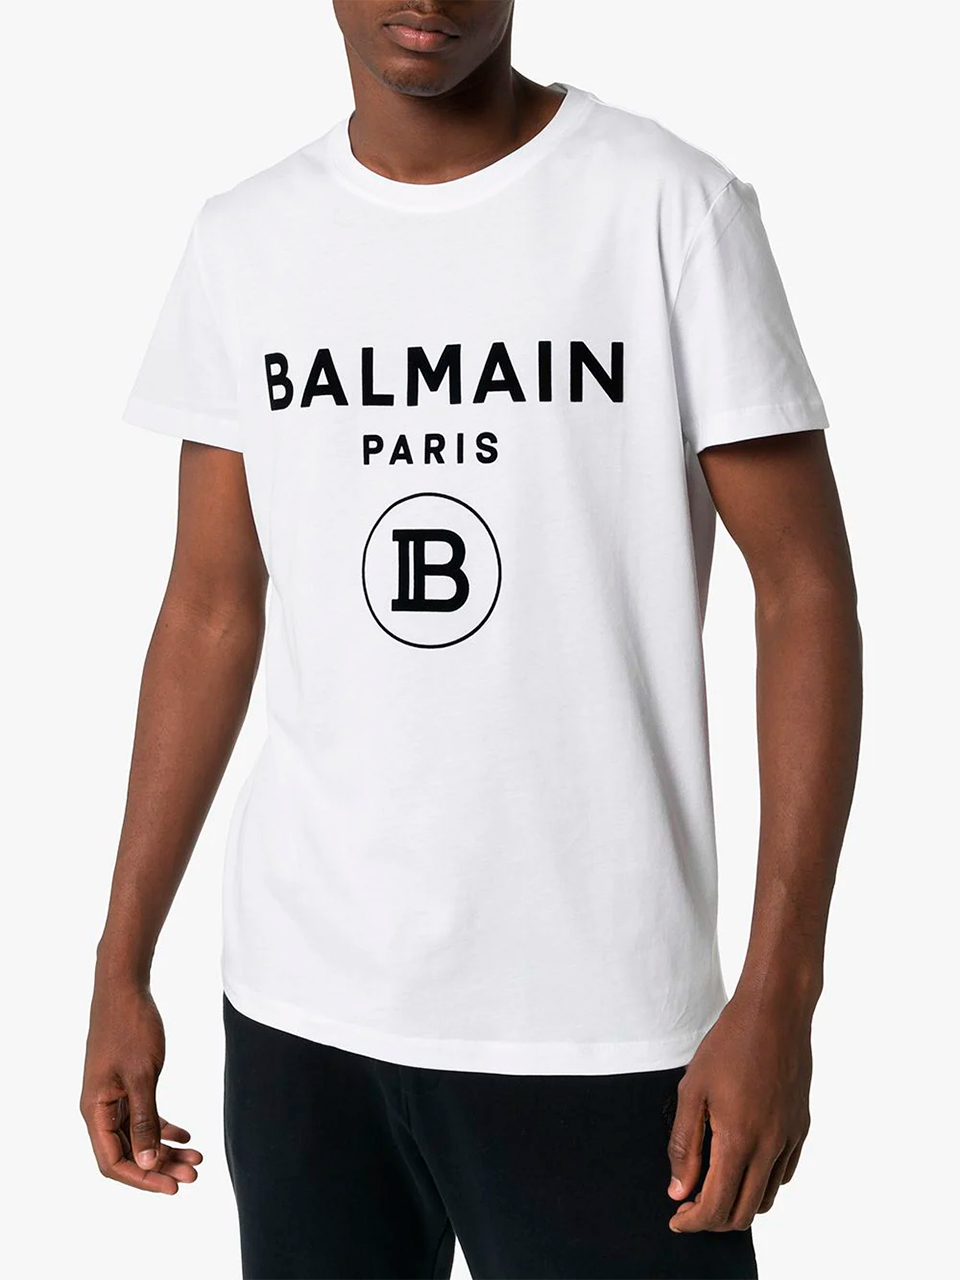 Imagem de: Camiseta Balmain Paris Branca com Estampa Preta